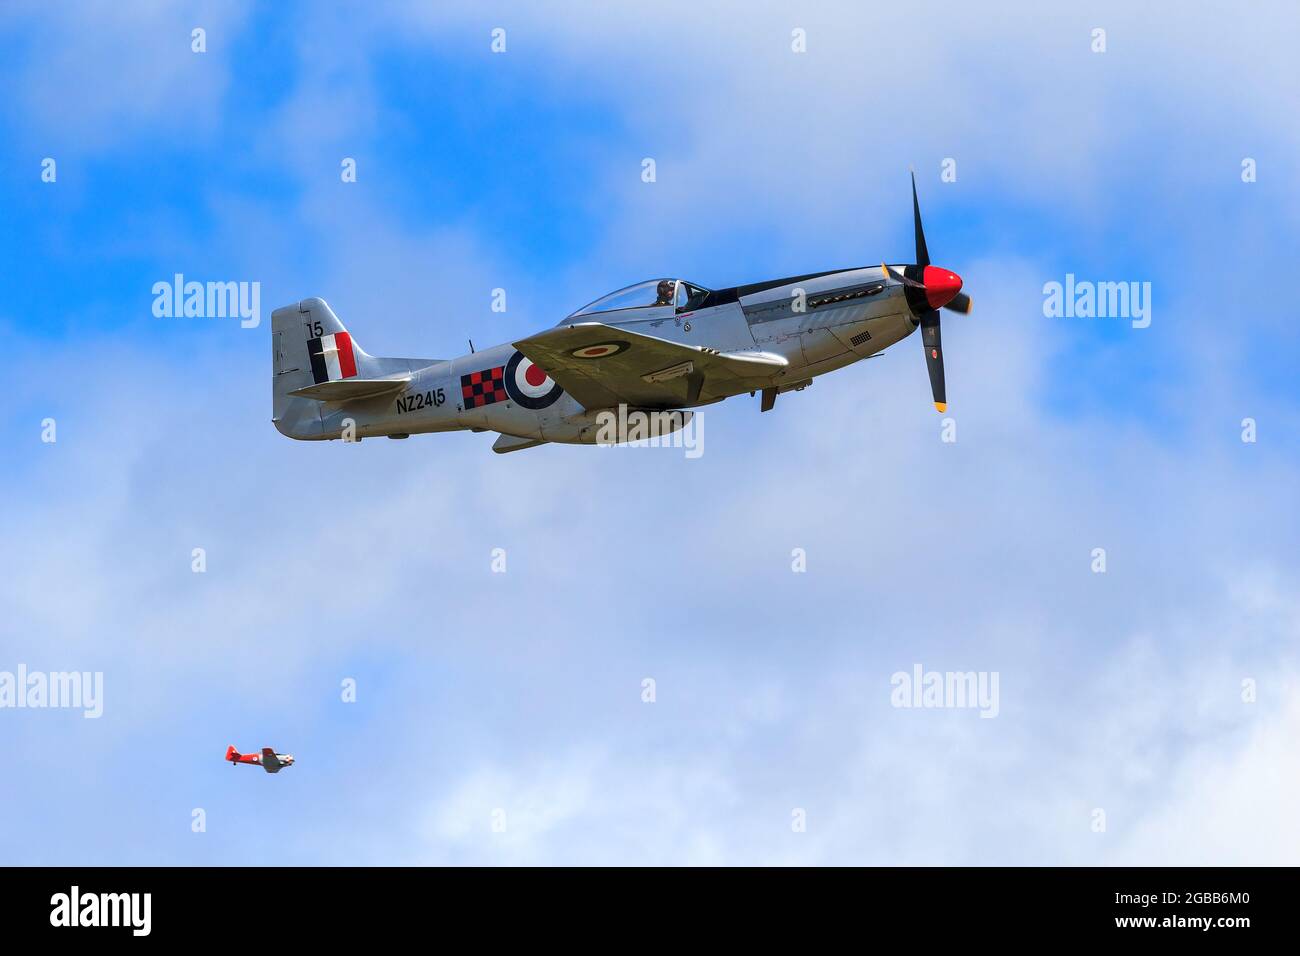 Un P-51 Mustang, un avion de chasse de la Seconde Guerre mondiale, dans le ciel lors d'un spectacle aérien. Il est peint en marques de la Royal New Zealand Air Force Banque D'Images